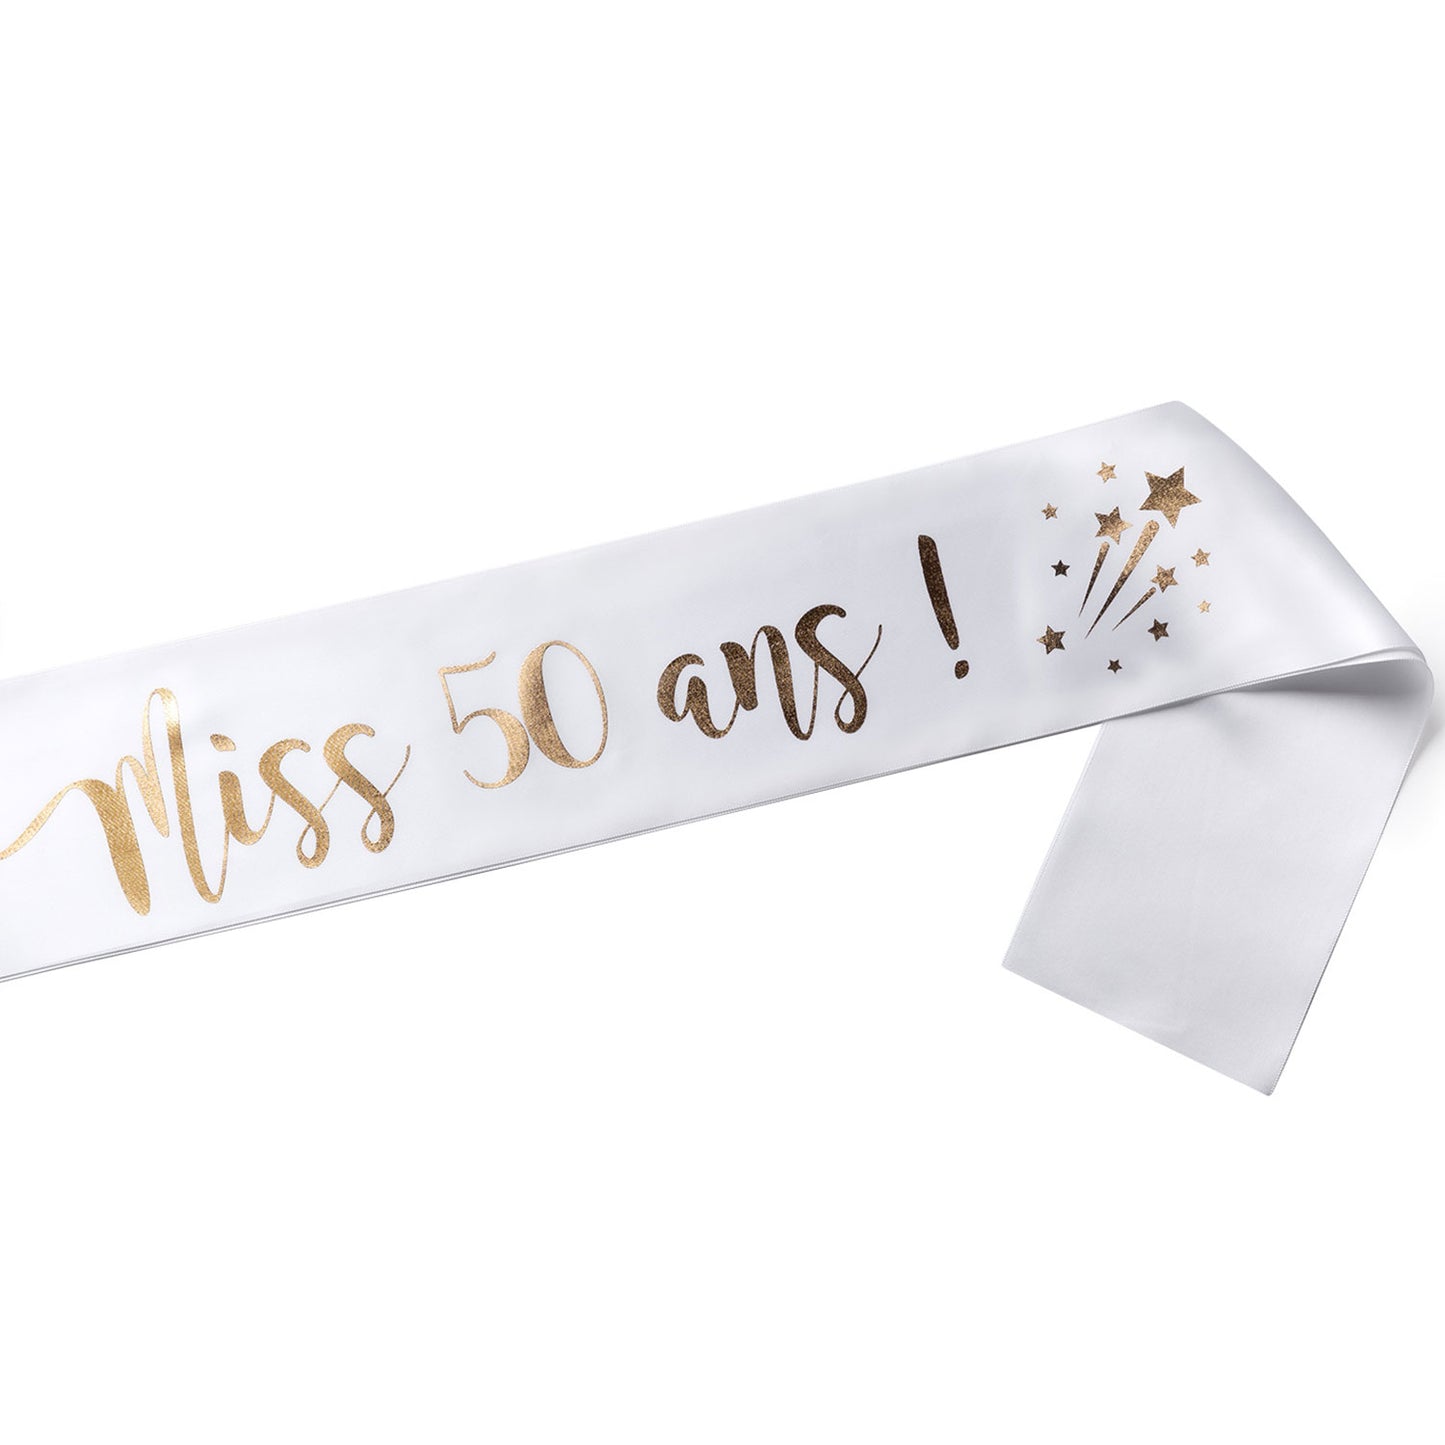 Echarpe Miss 50 ans pour fêter son 50ième Anniversaire - Blanche et Or